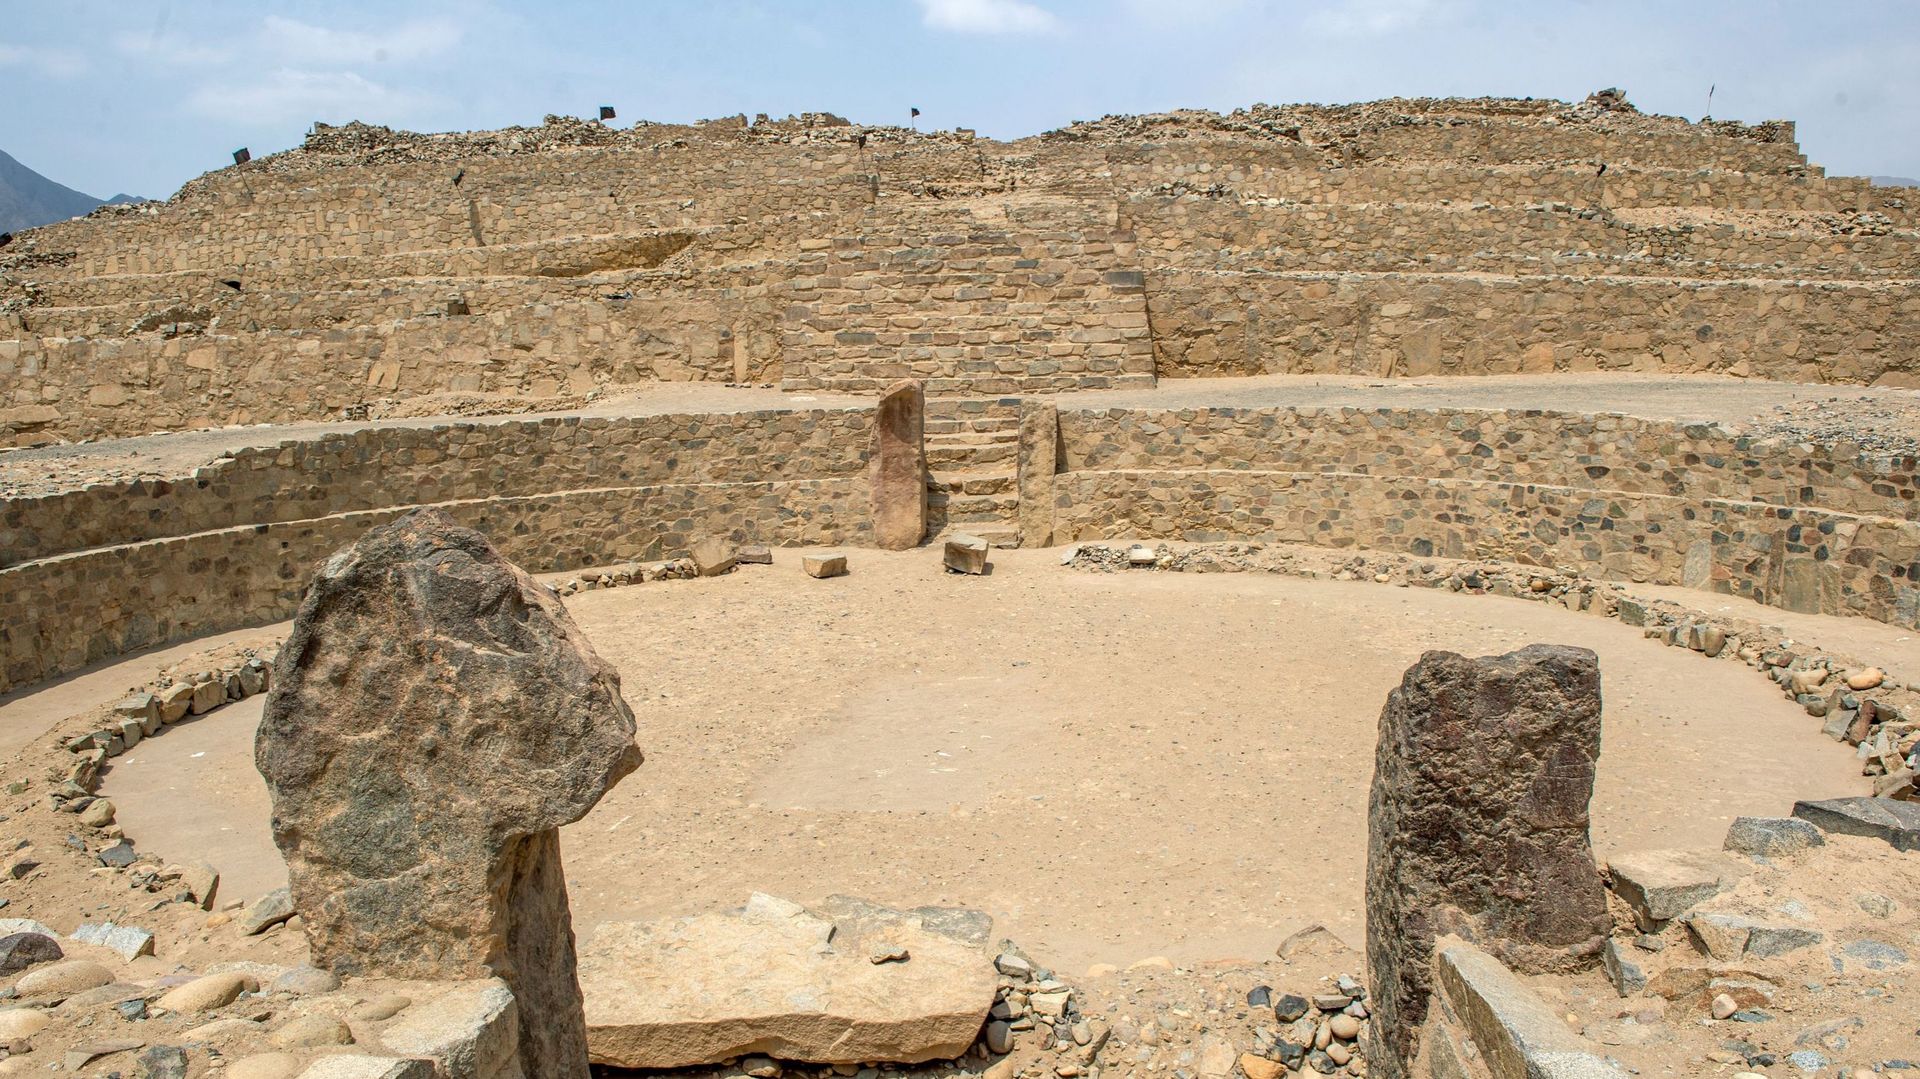 Pérou: Caral, cité archéologique vieille de 5000 ans, menacée par des constructions illégales